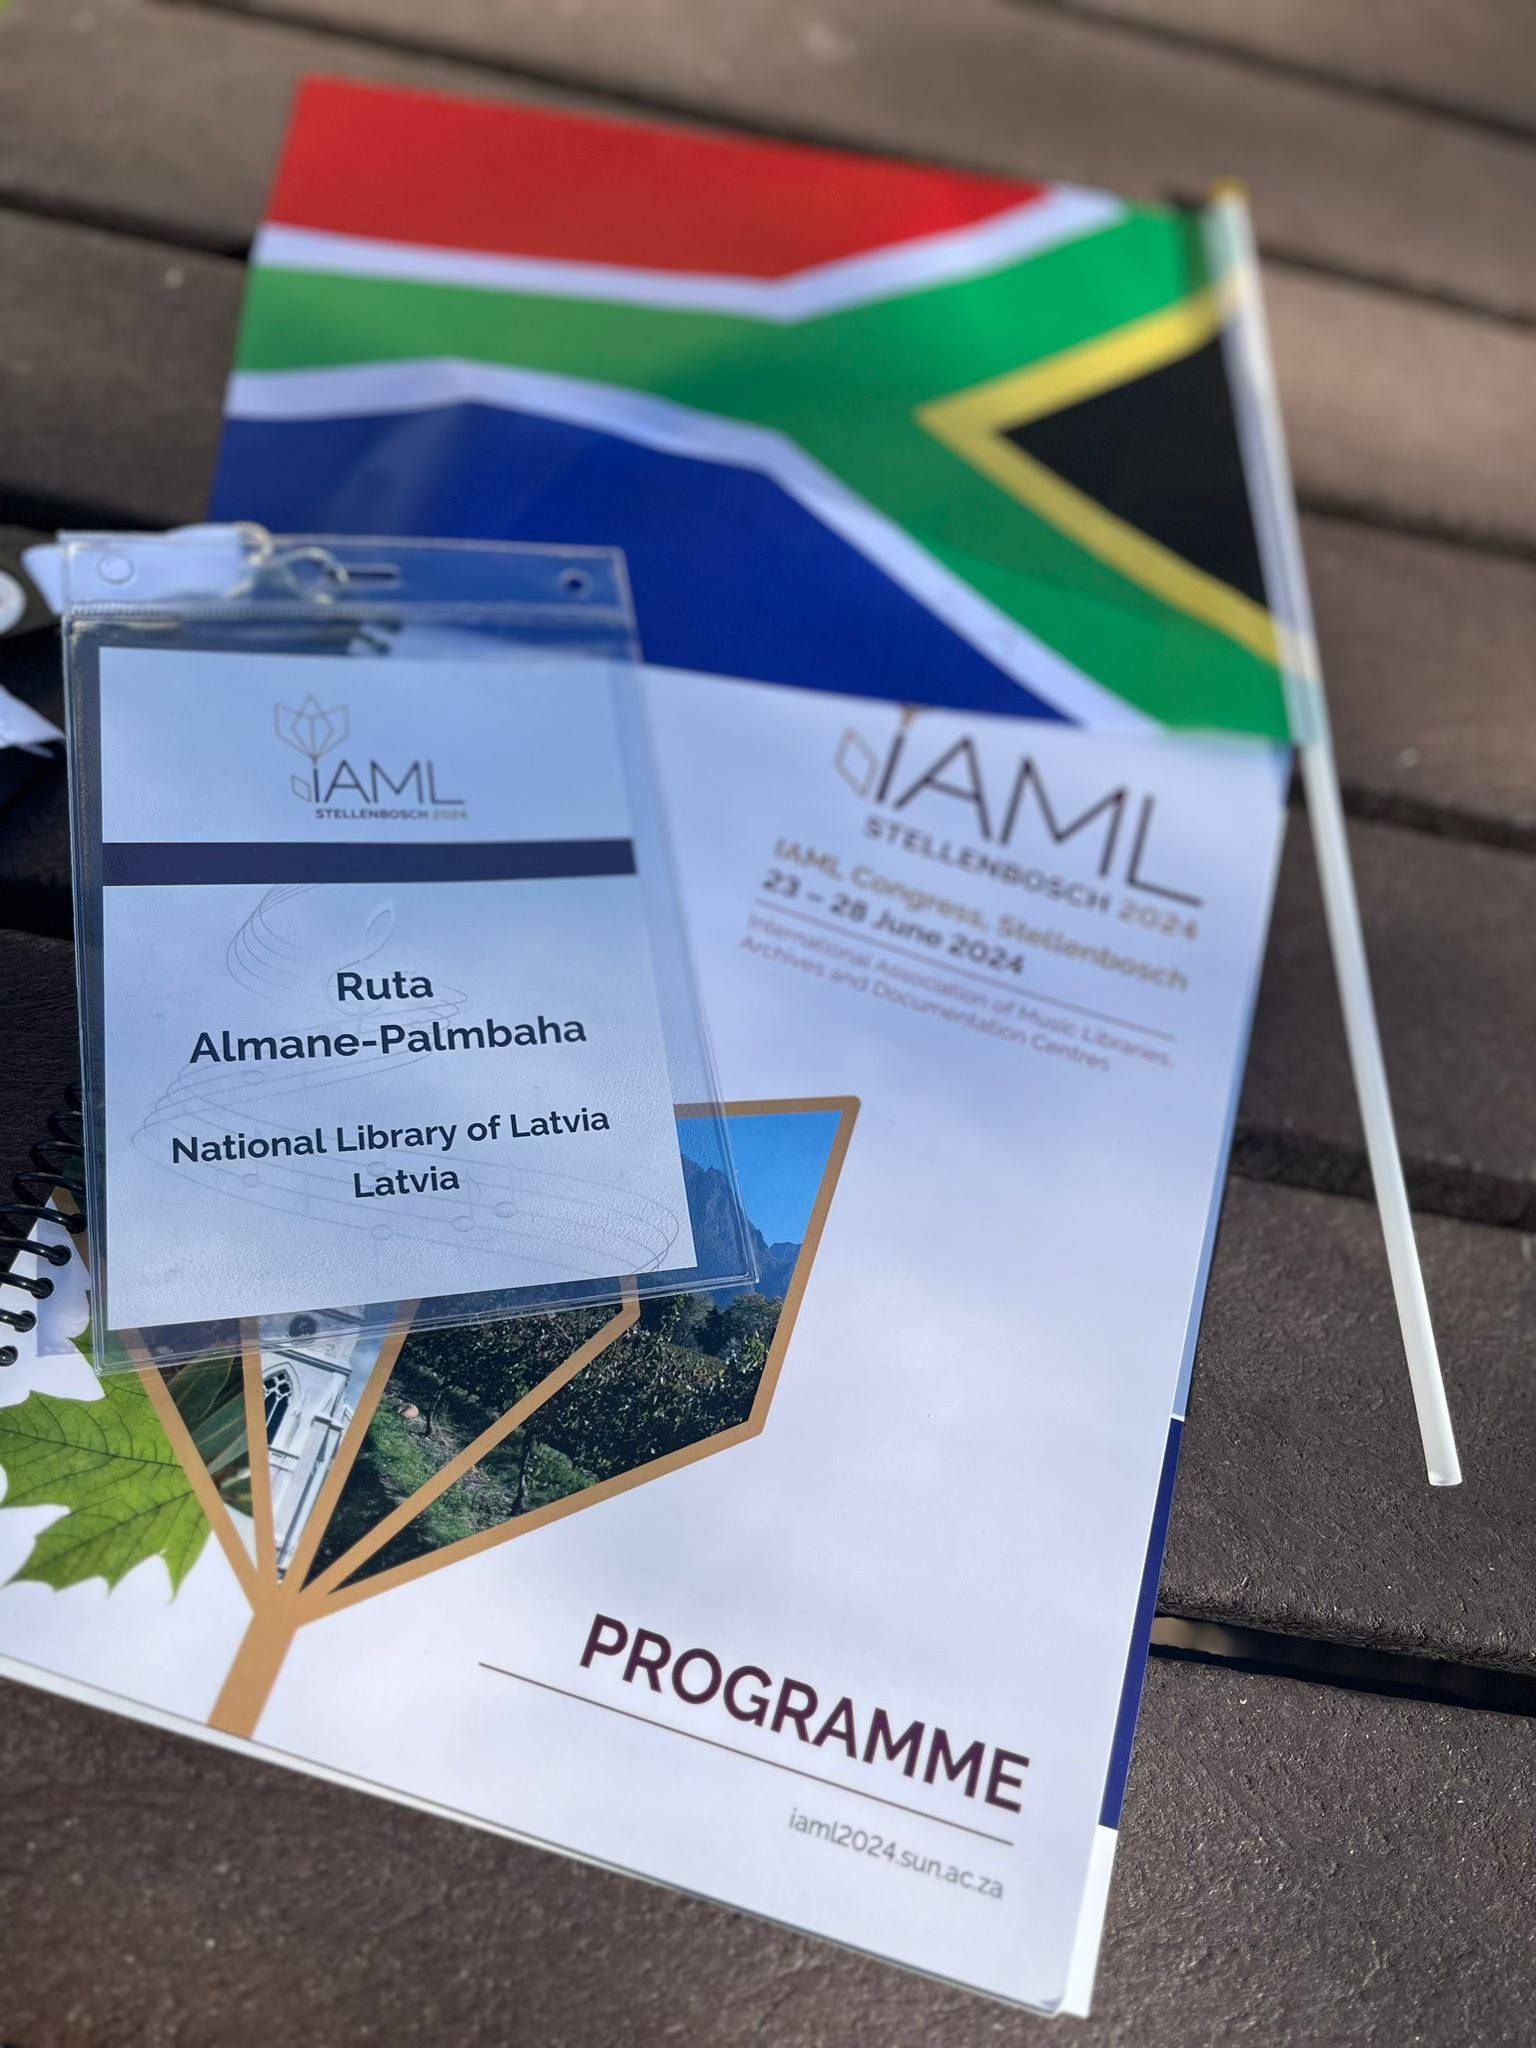 IAML Stellenbosch programme and South Africa flag